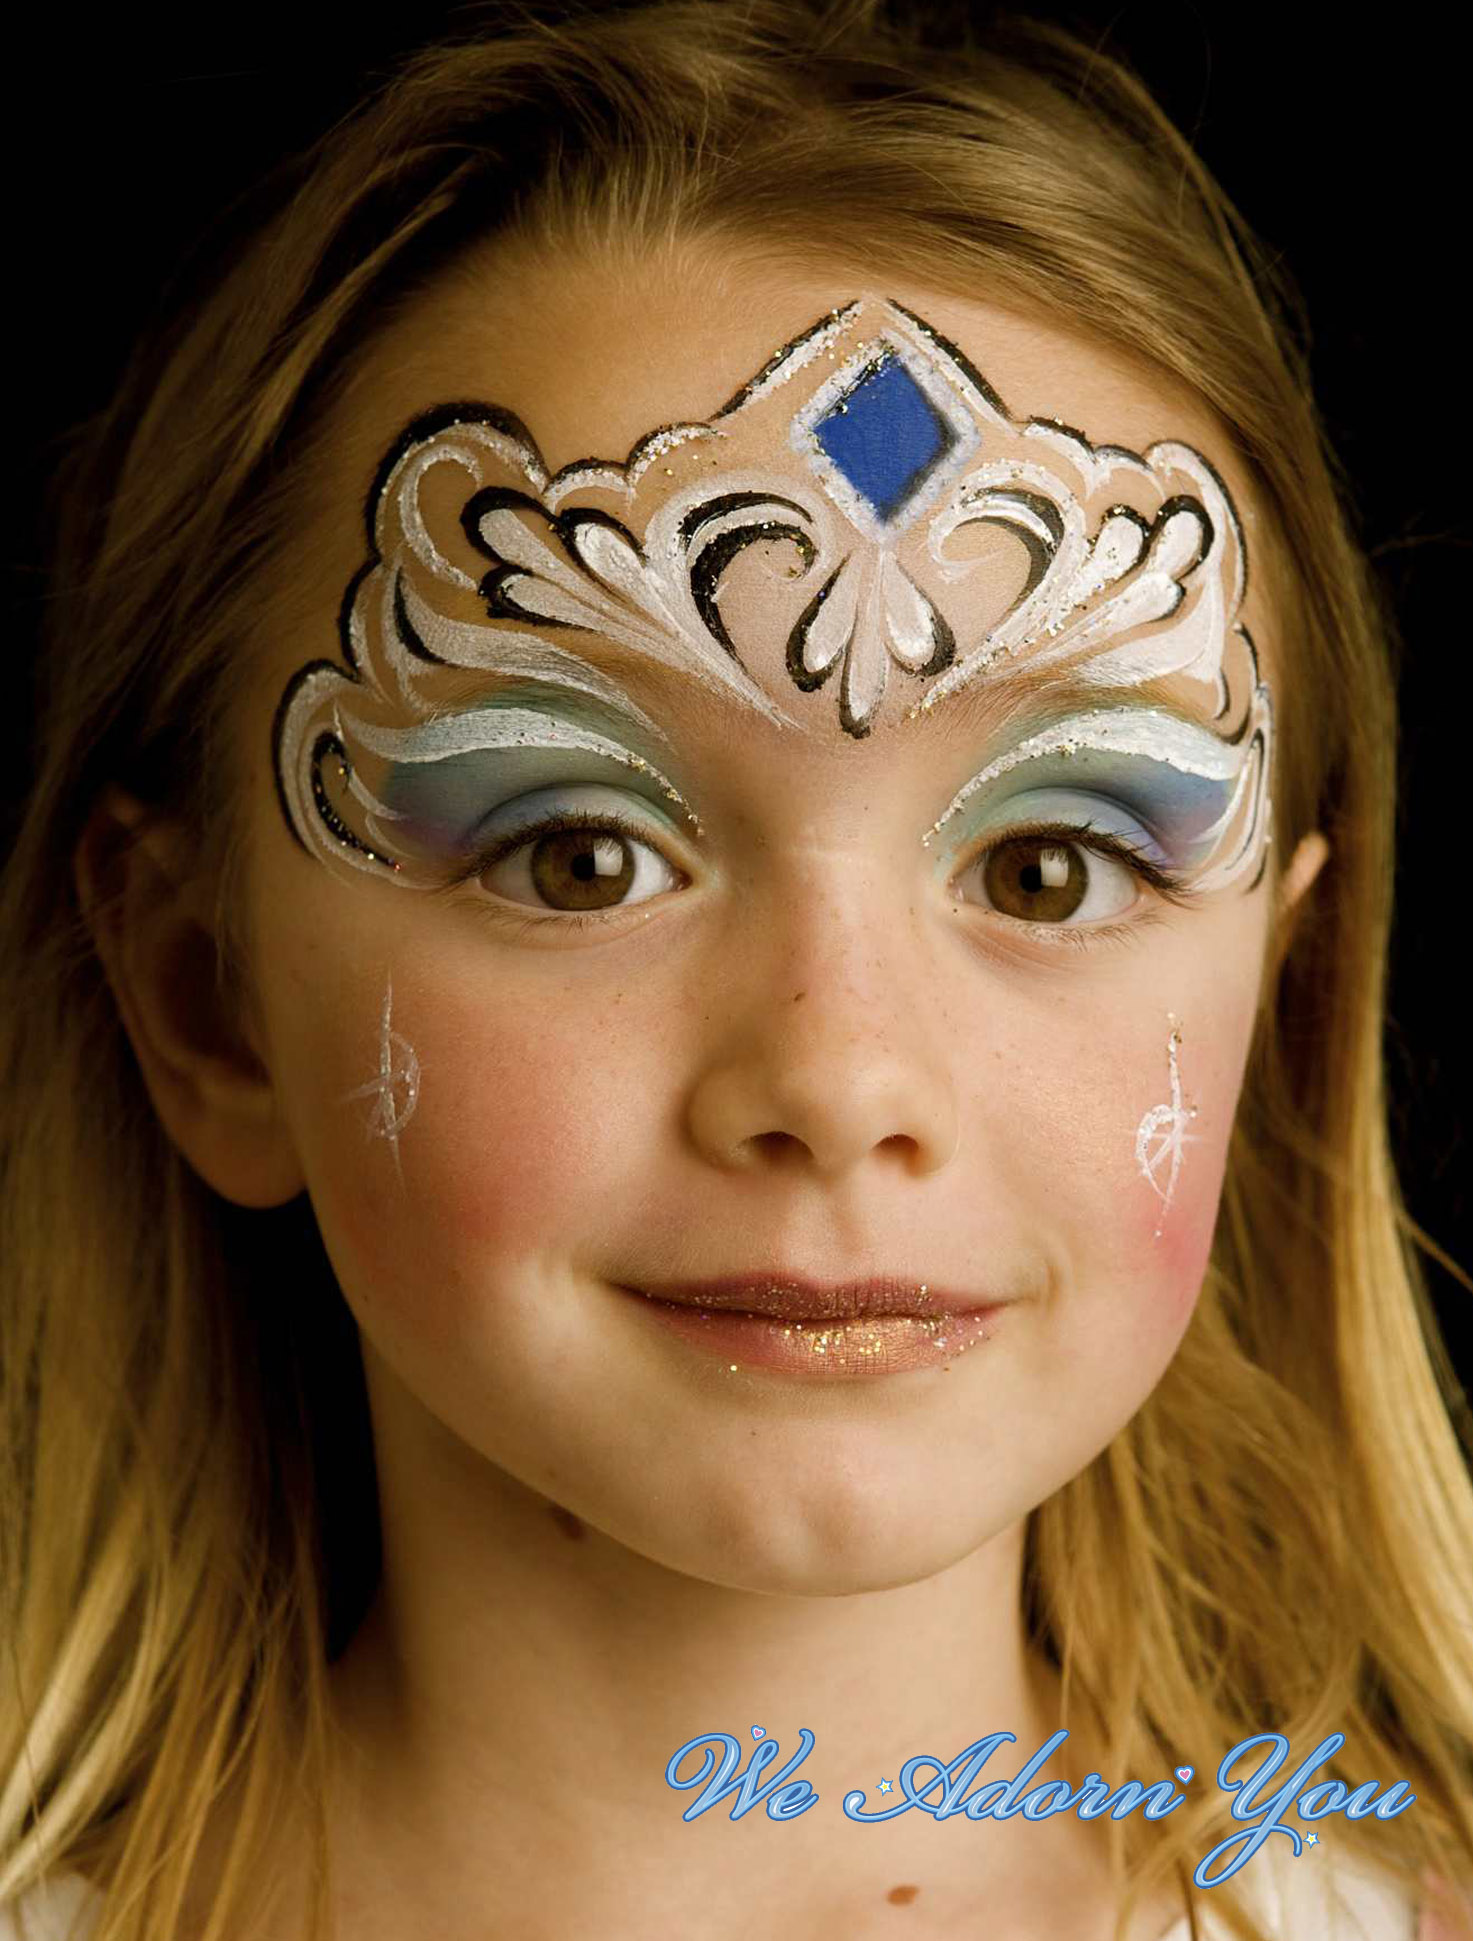 Face Painting Princess- We Adorn You.jpg